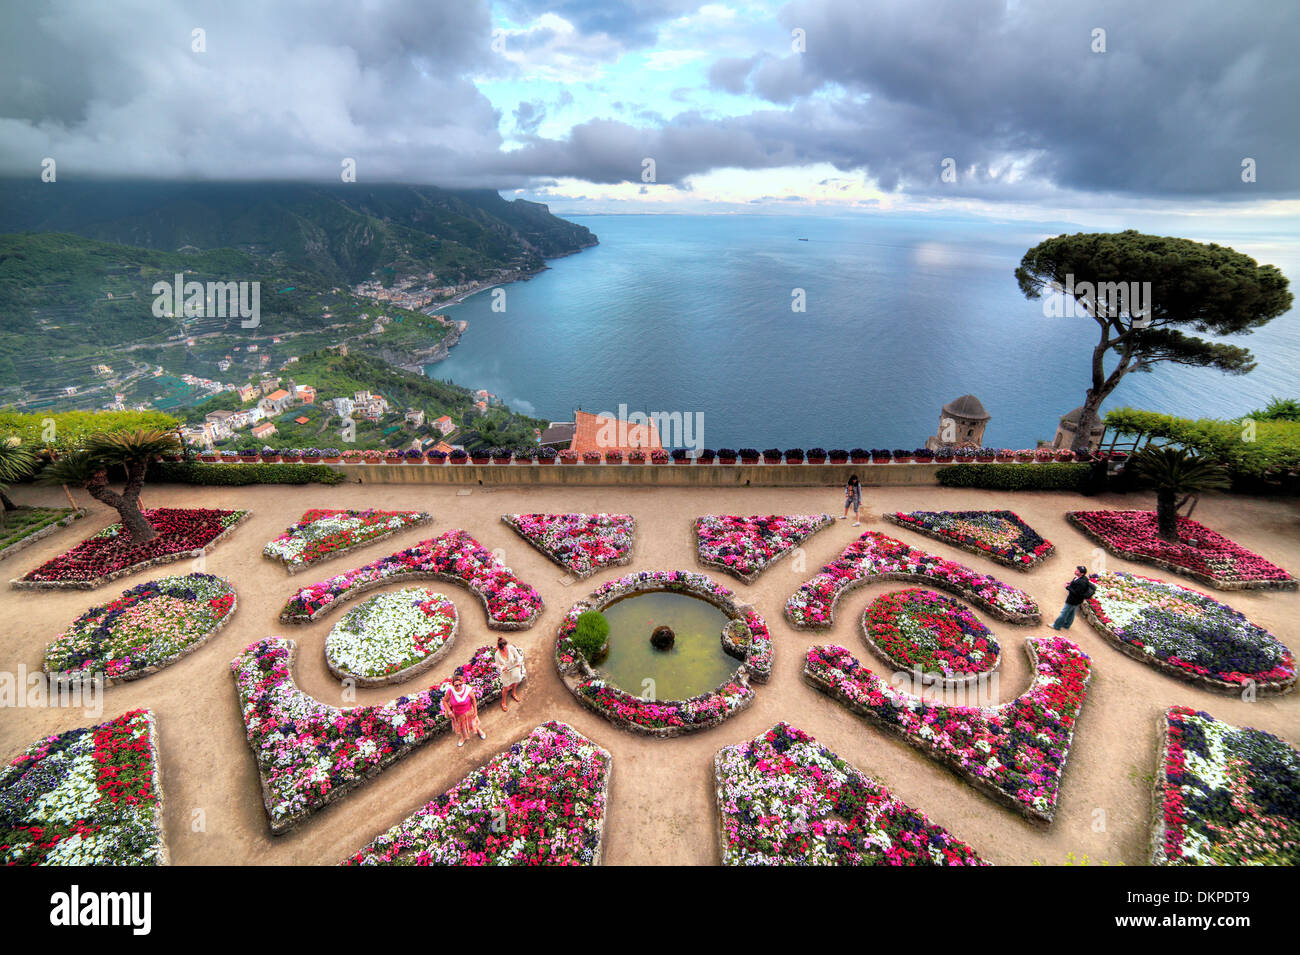 Villa Rufolo, Ravello, Amalfi Küste, Kampanien, Italien Stockfoto